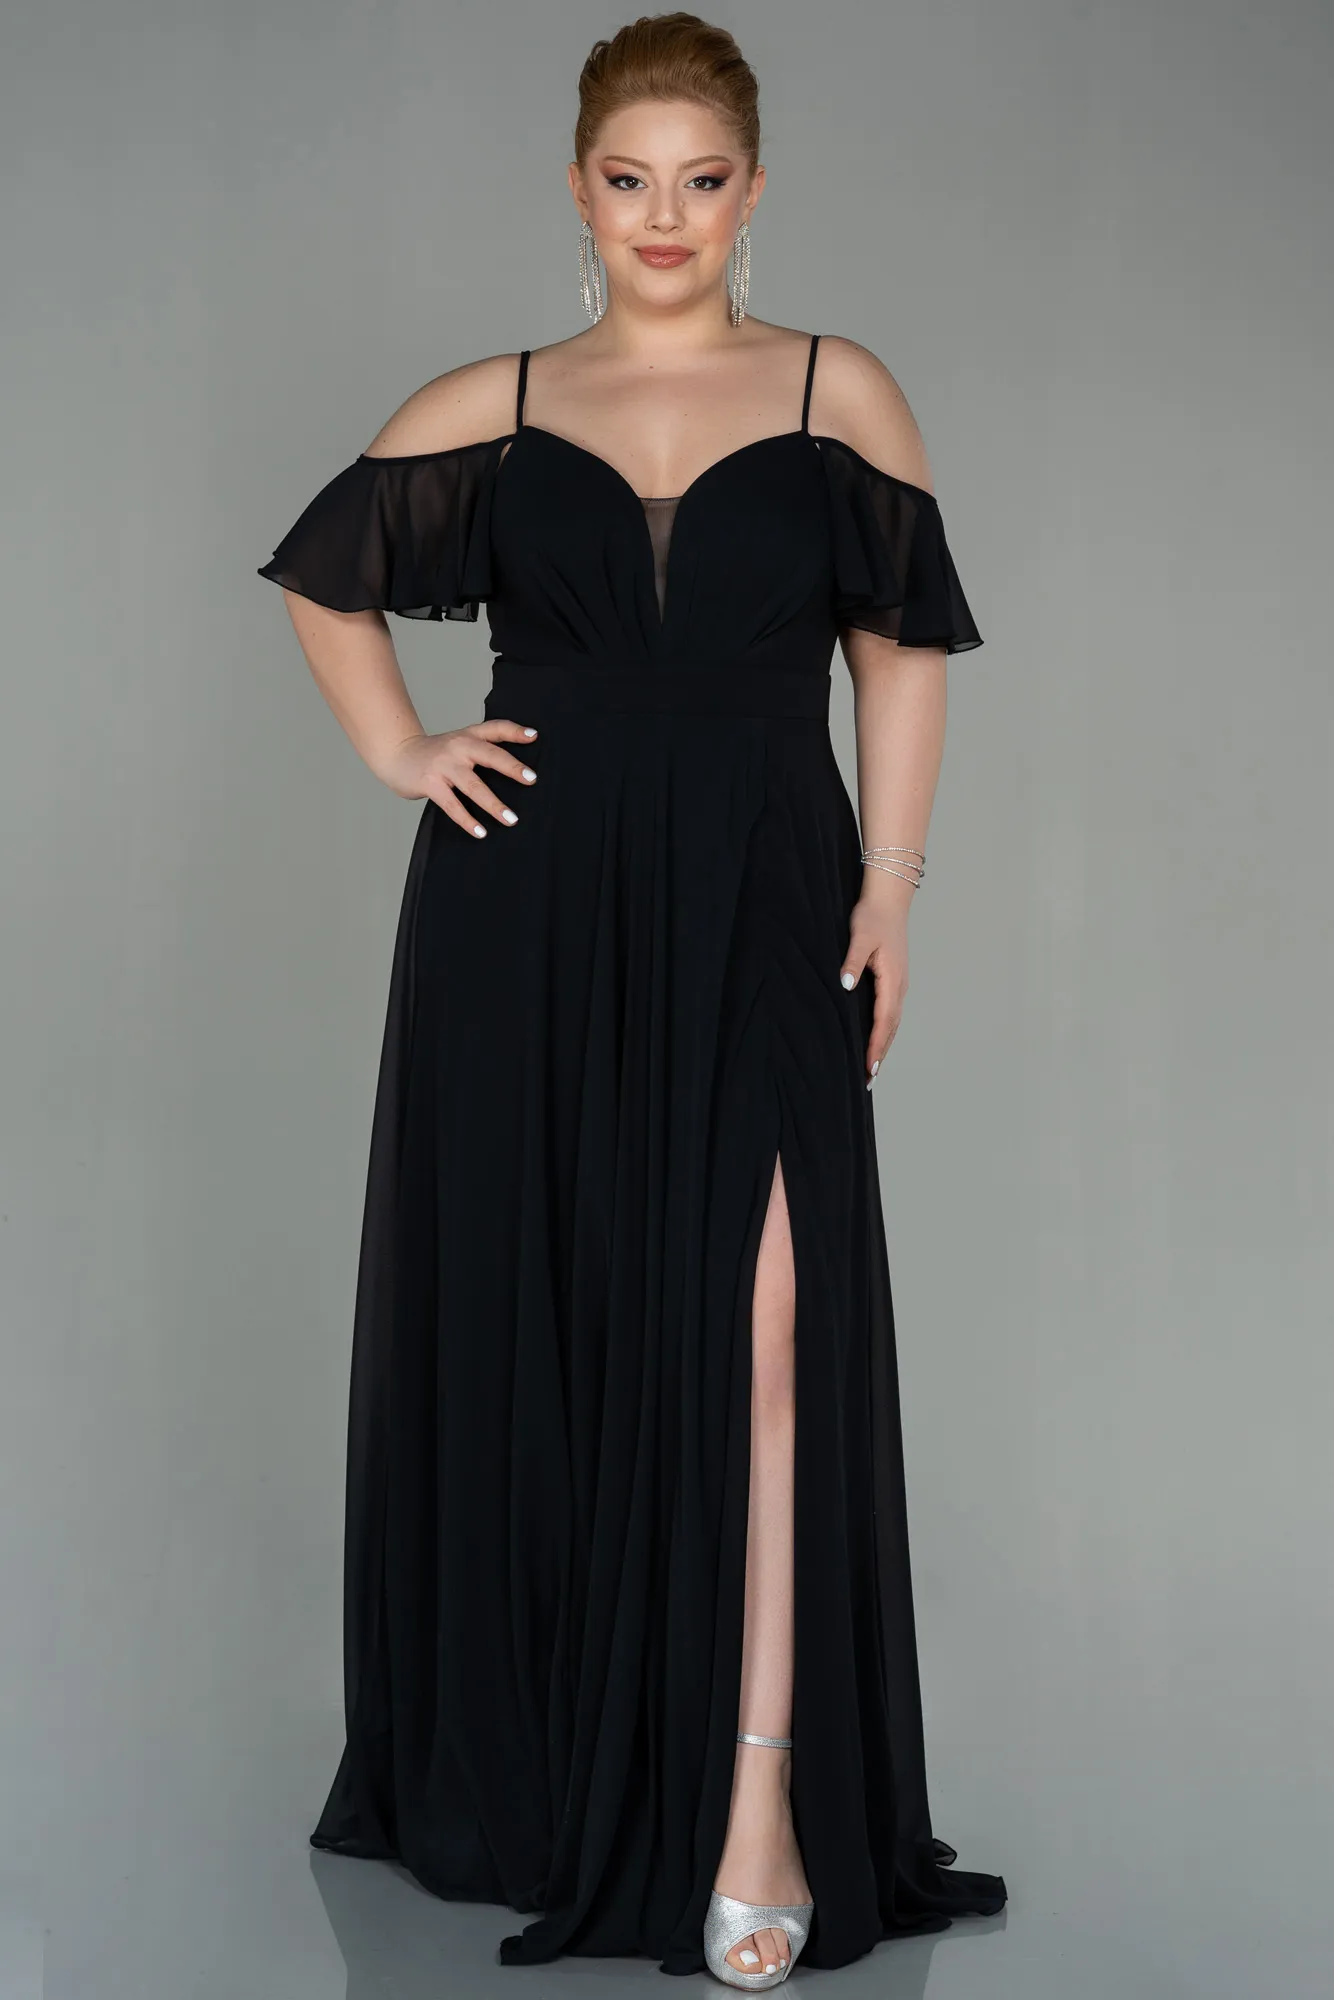 Black-Long Chiffon Plus Size Evening Dress ABU2875